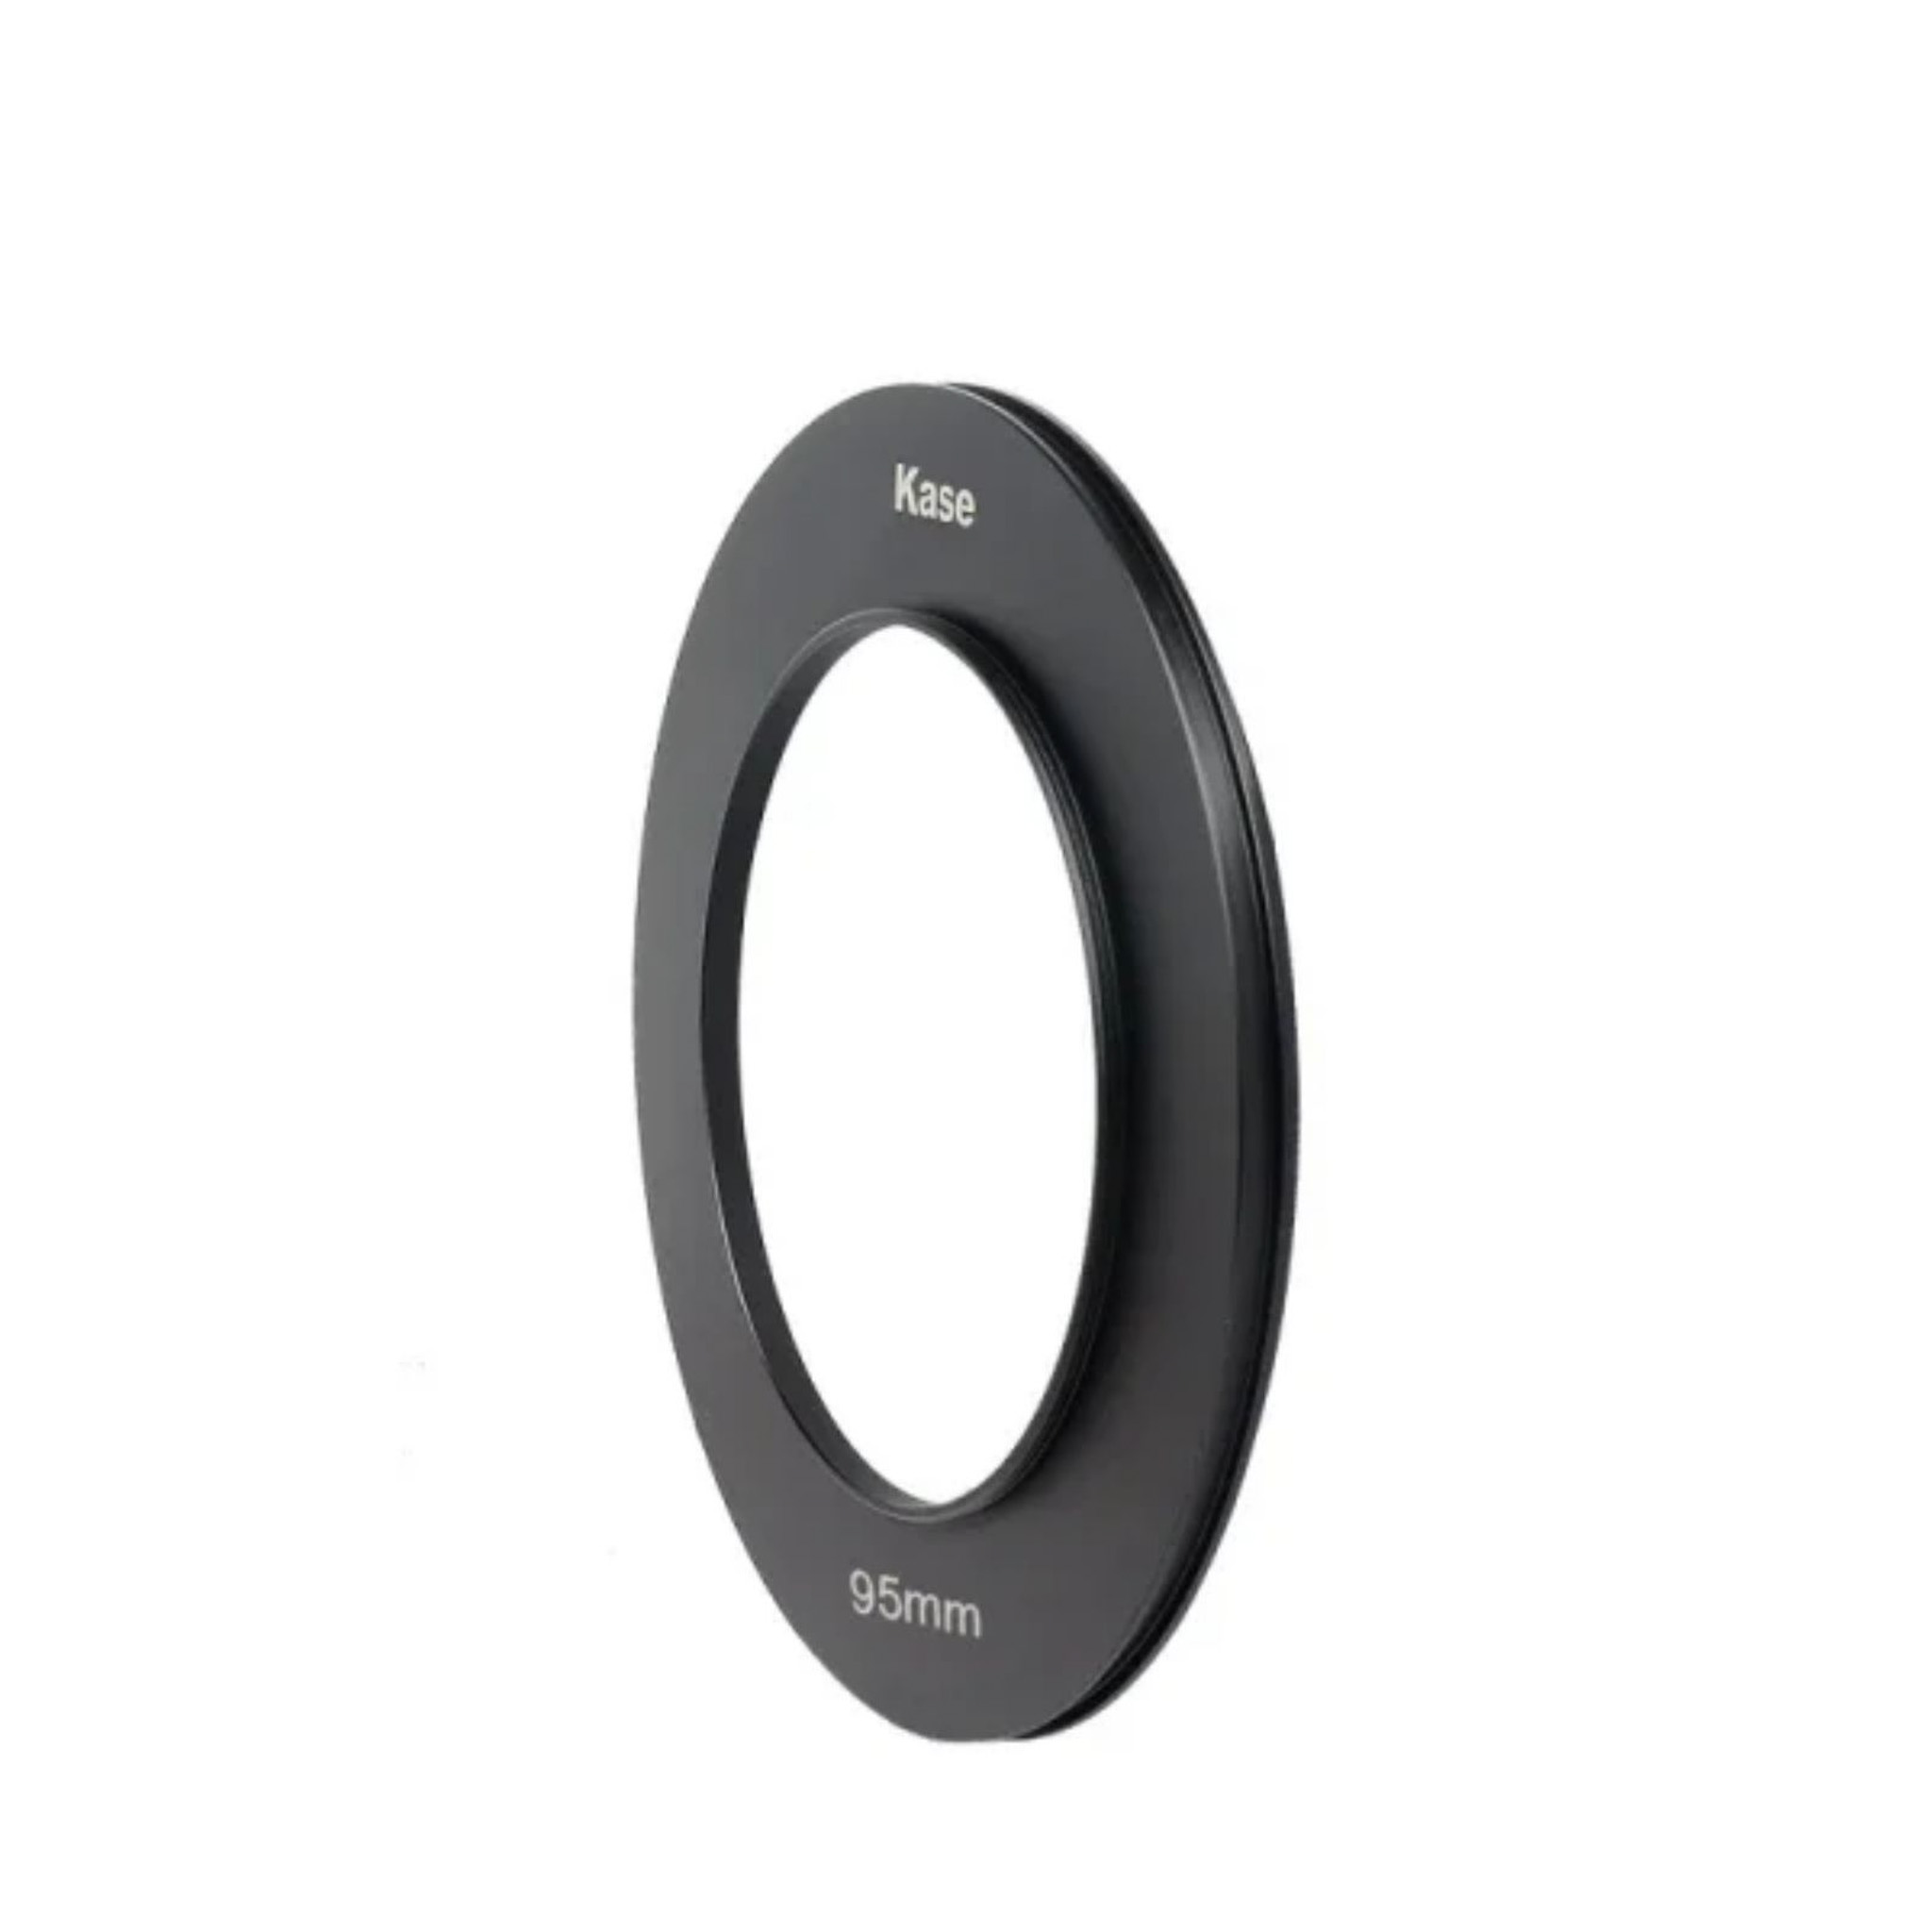 K150 Adapter Ring for K150 II Filter Holder